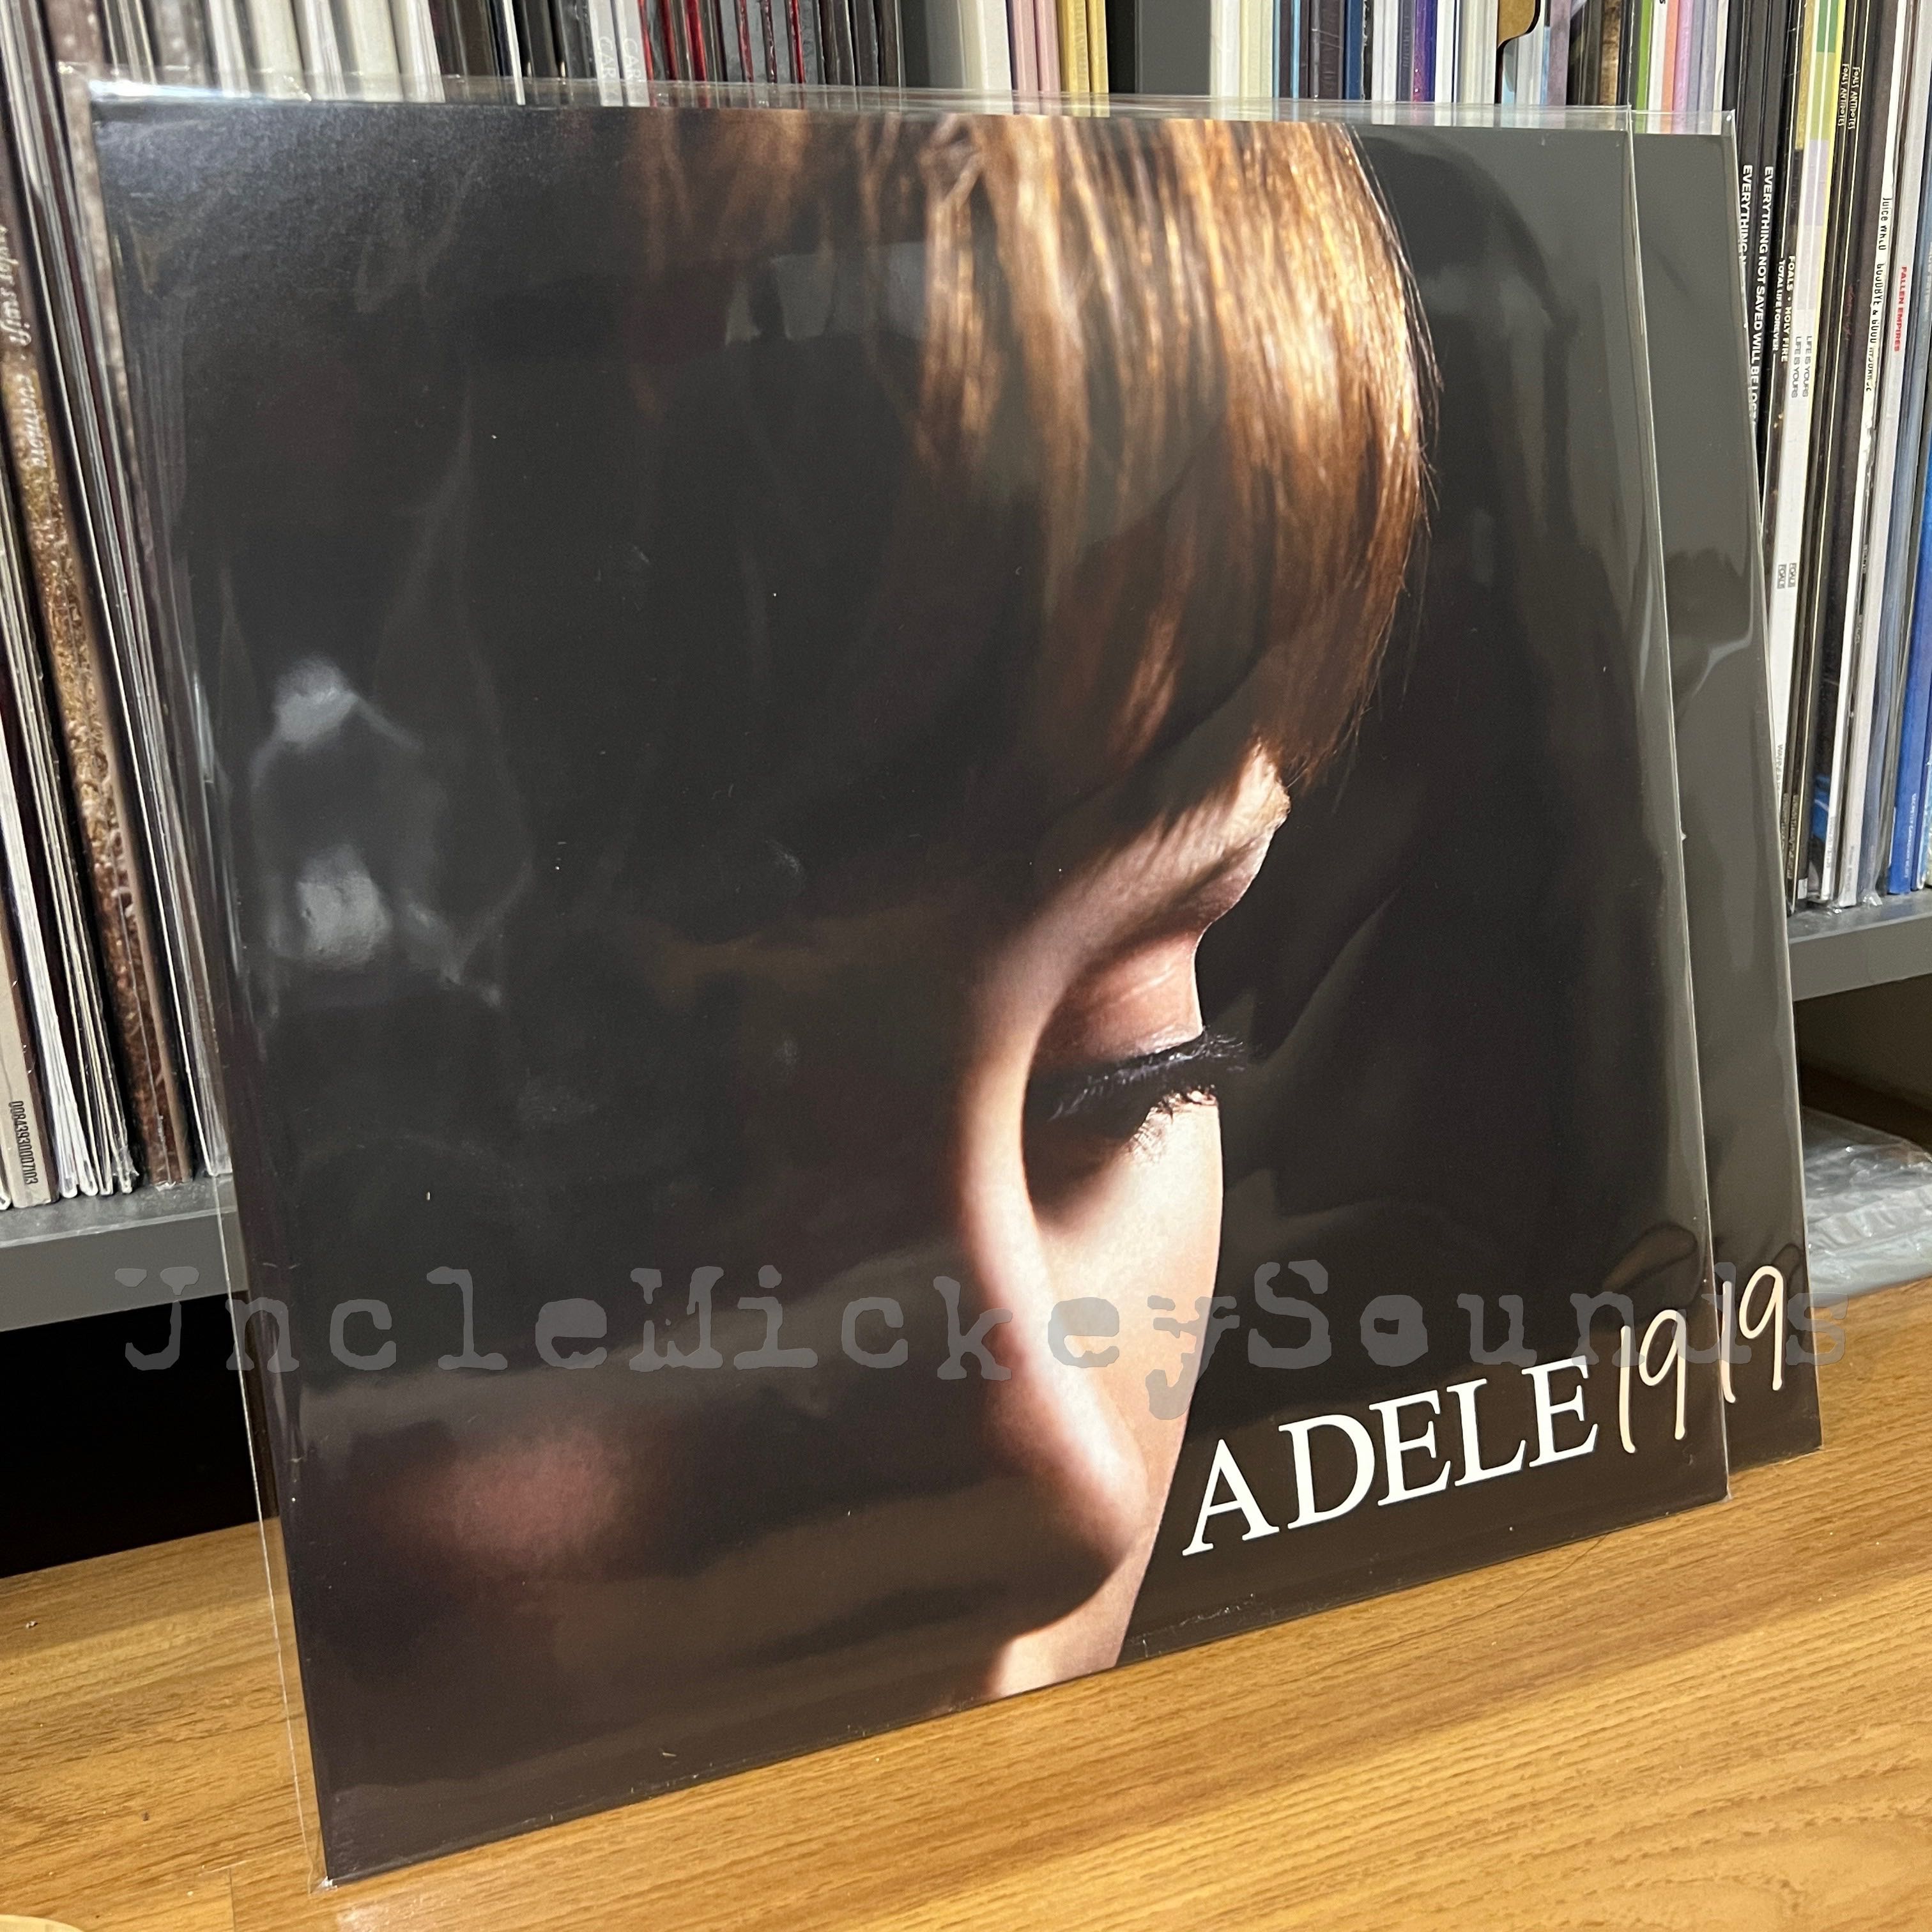 Adele - 19 - Vinyl 